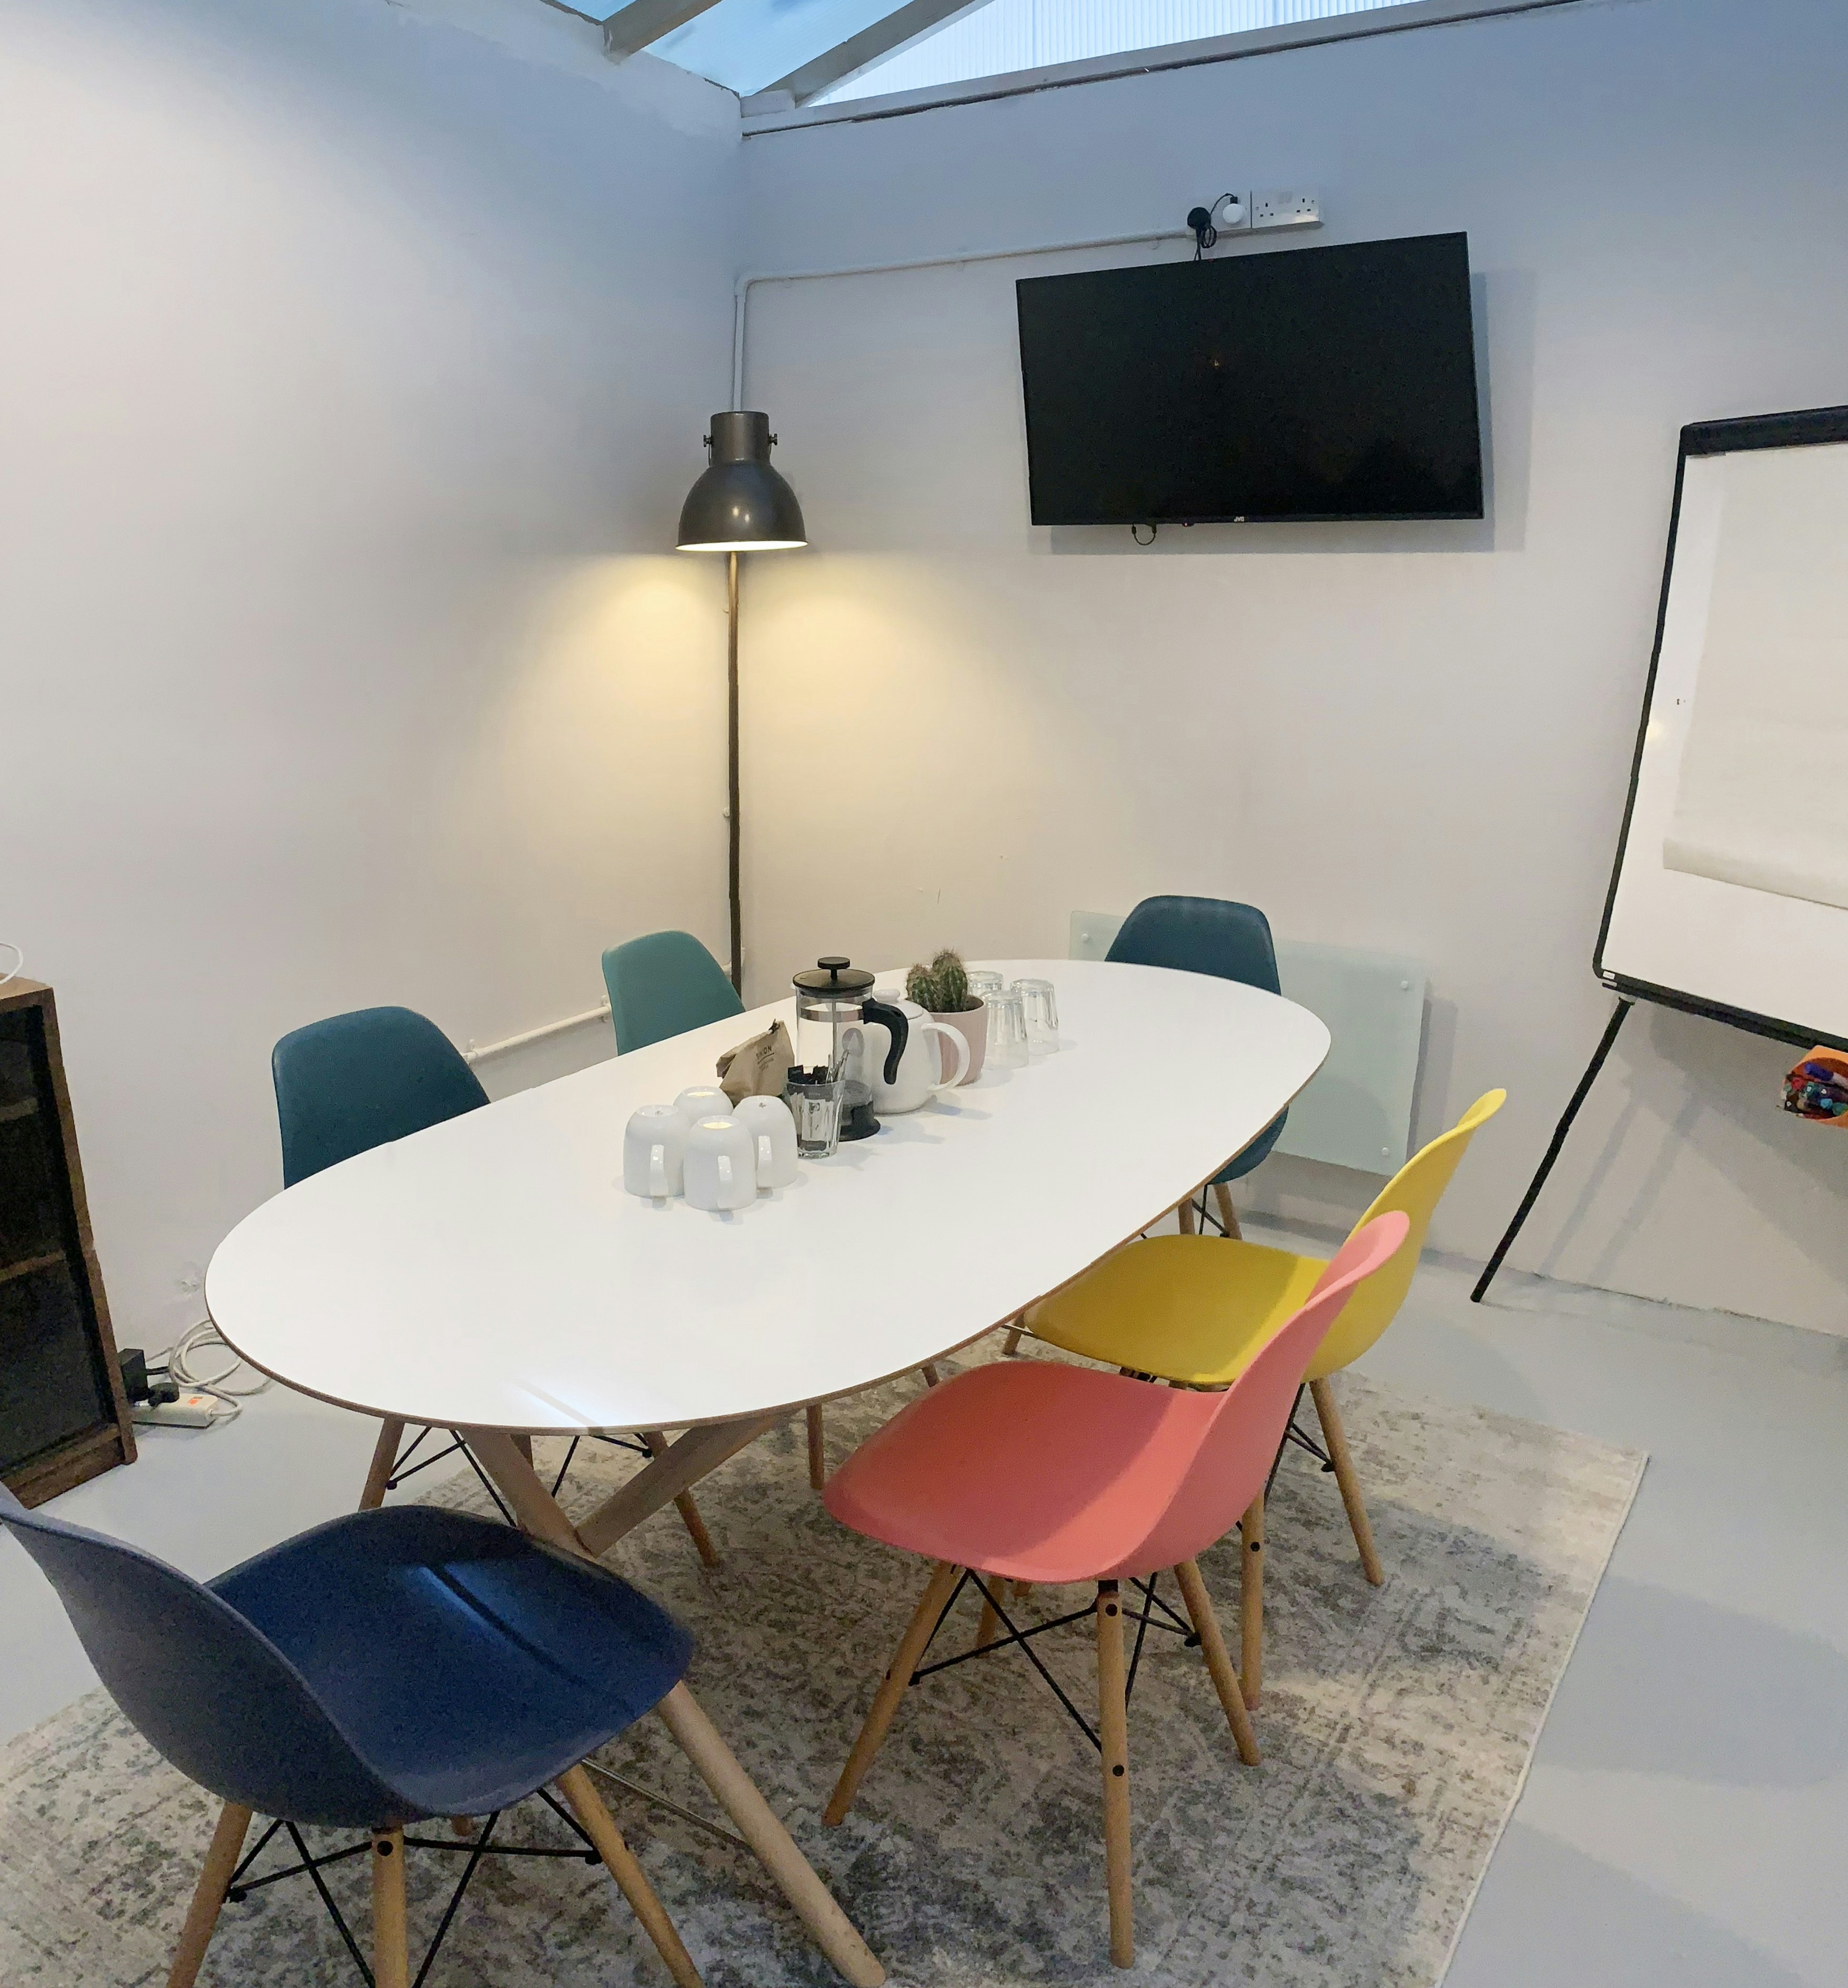 Meeting Rooms Venues in Islington - ARK coworking